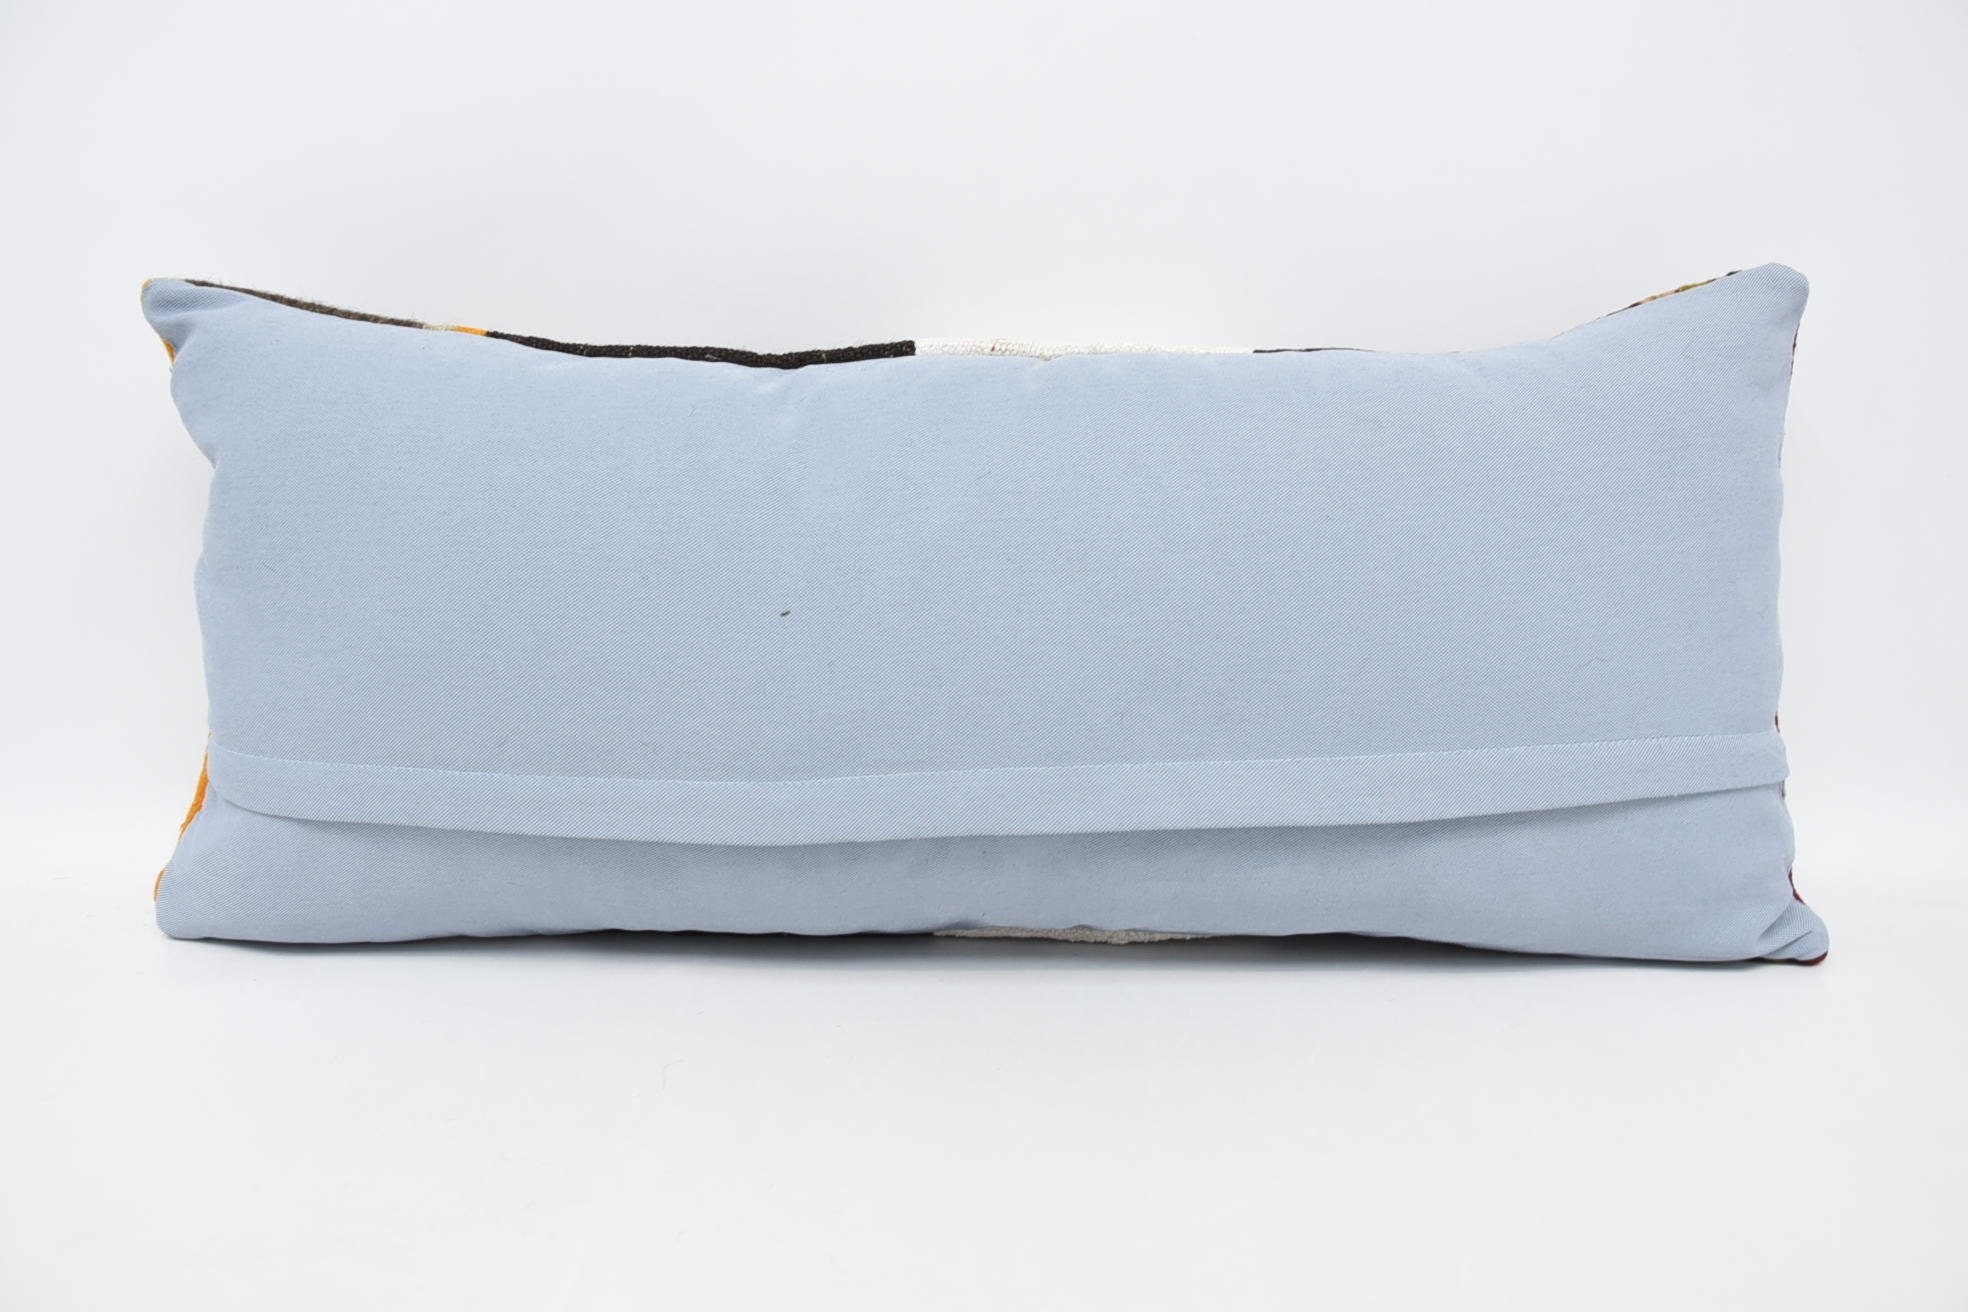 16"x36" Brown Pillow Cover, Vintage Kilim Pillow, Boho Pillow Sham Cover, Nomadic Cushion Cover, Vintage Pillow